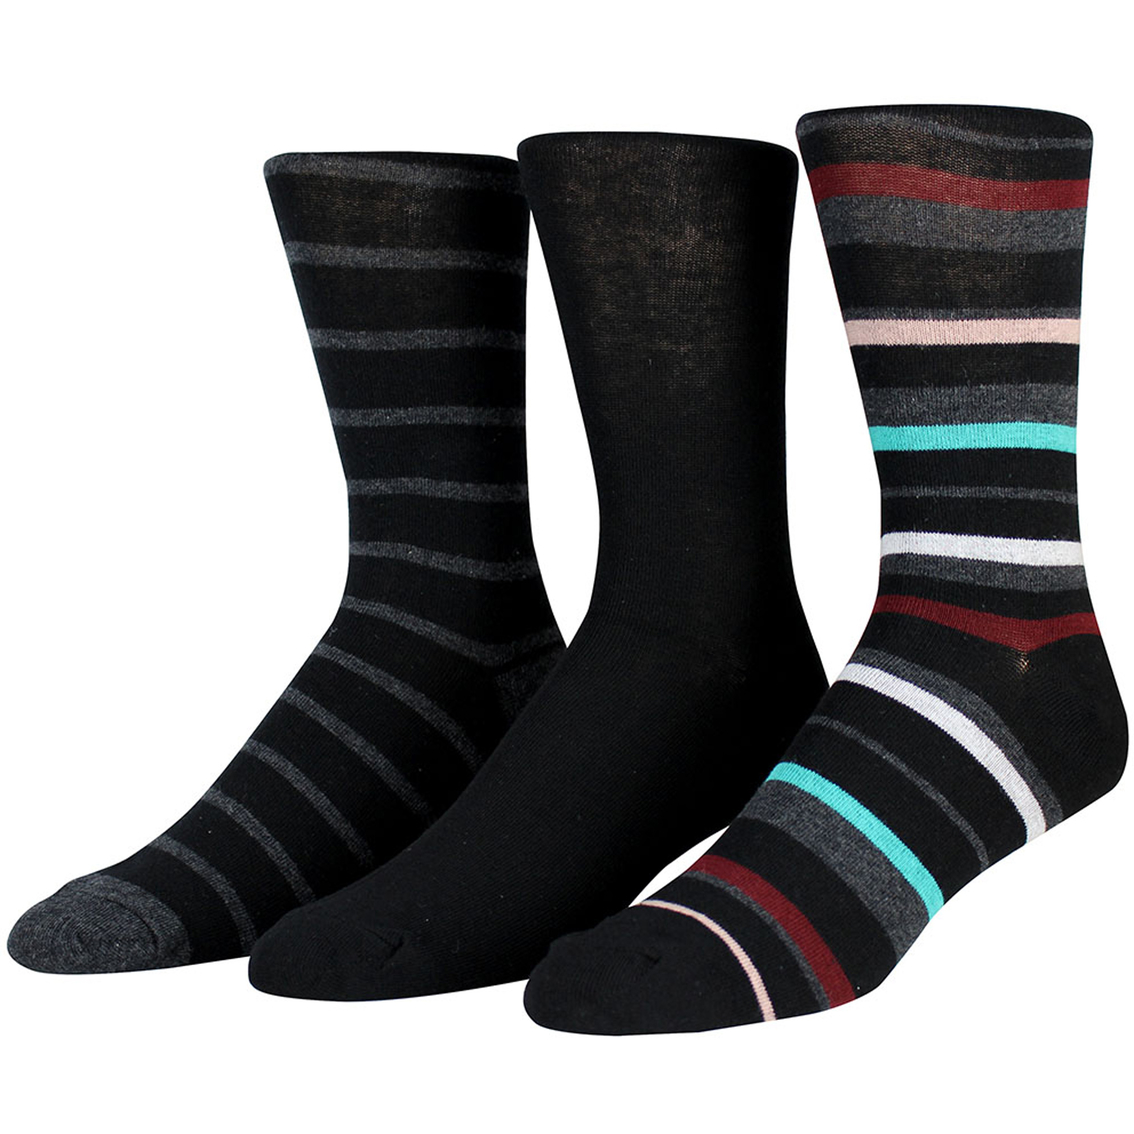 Steve Madden Basic Crew Socks 3 Pk. | Socks | Clothing & Accessories ...